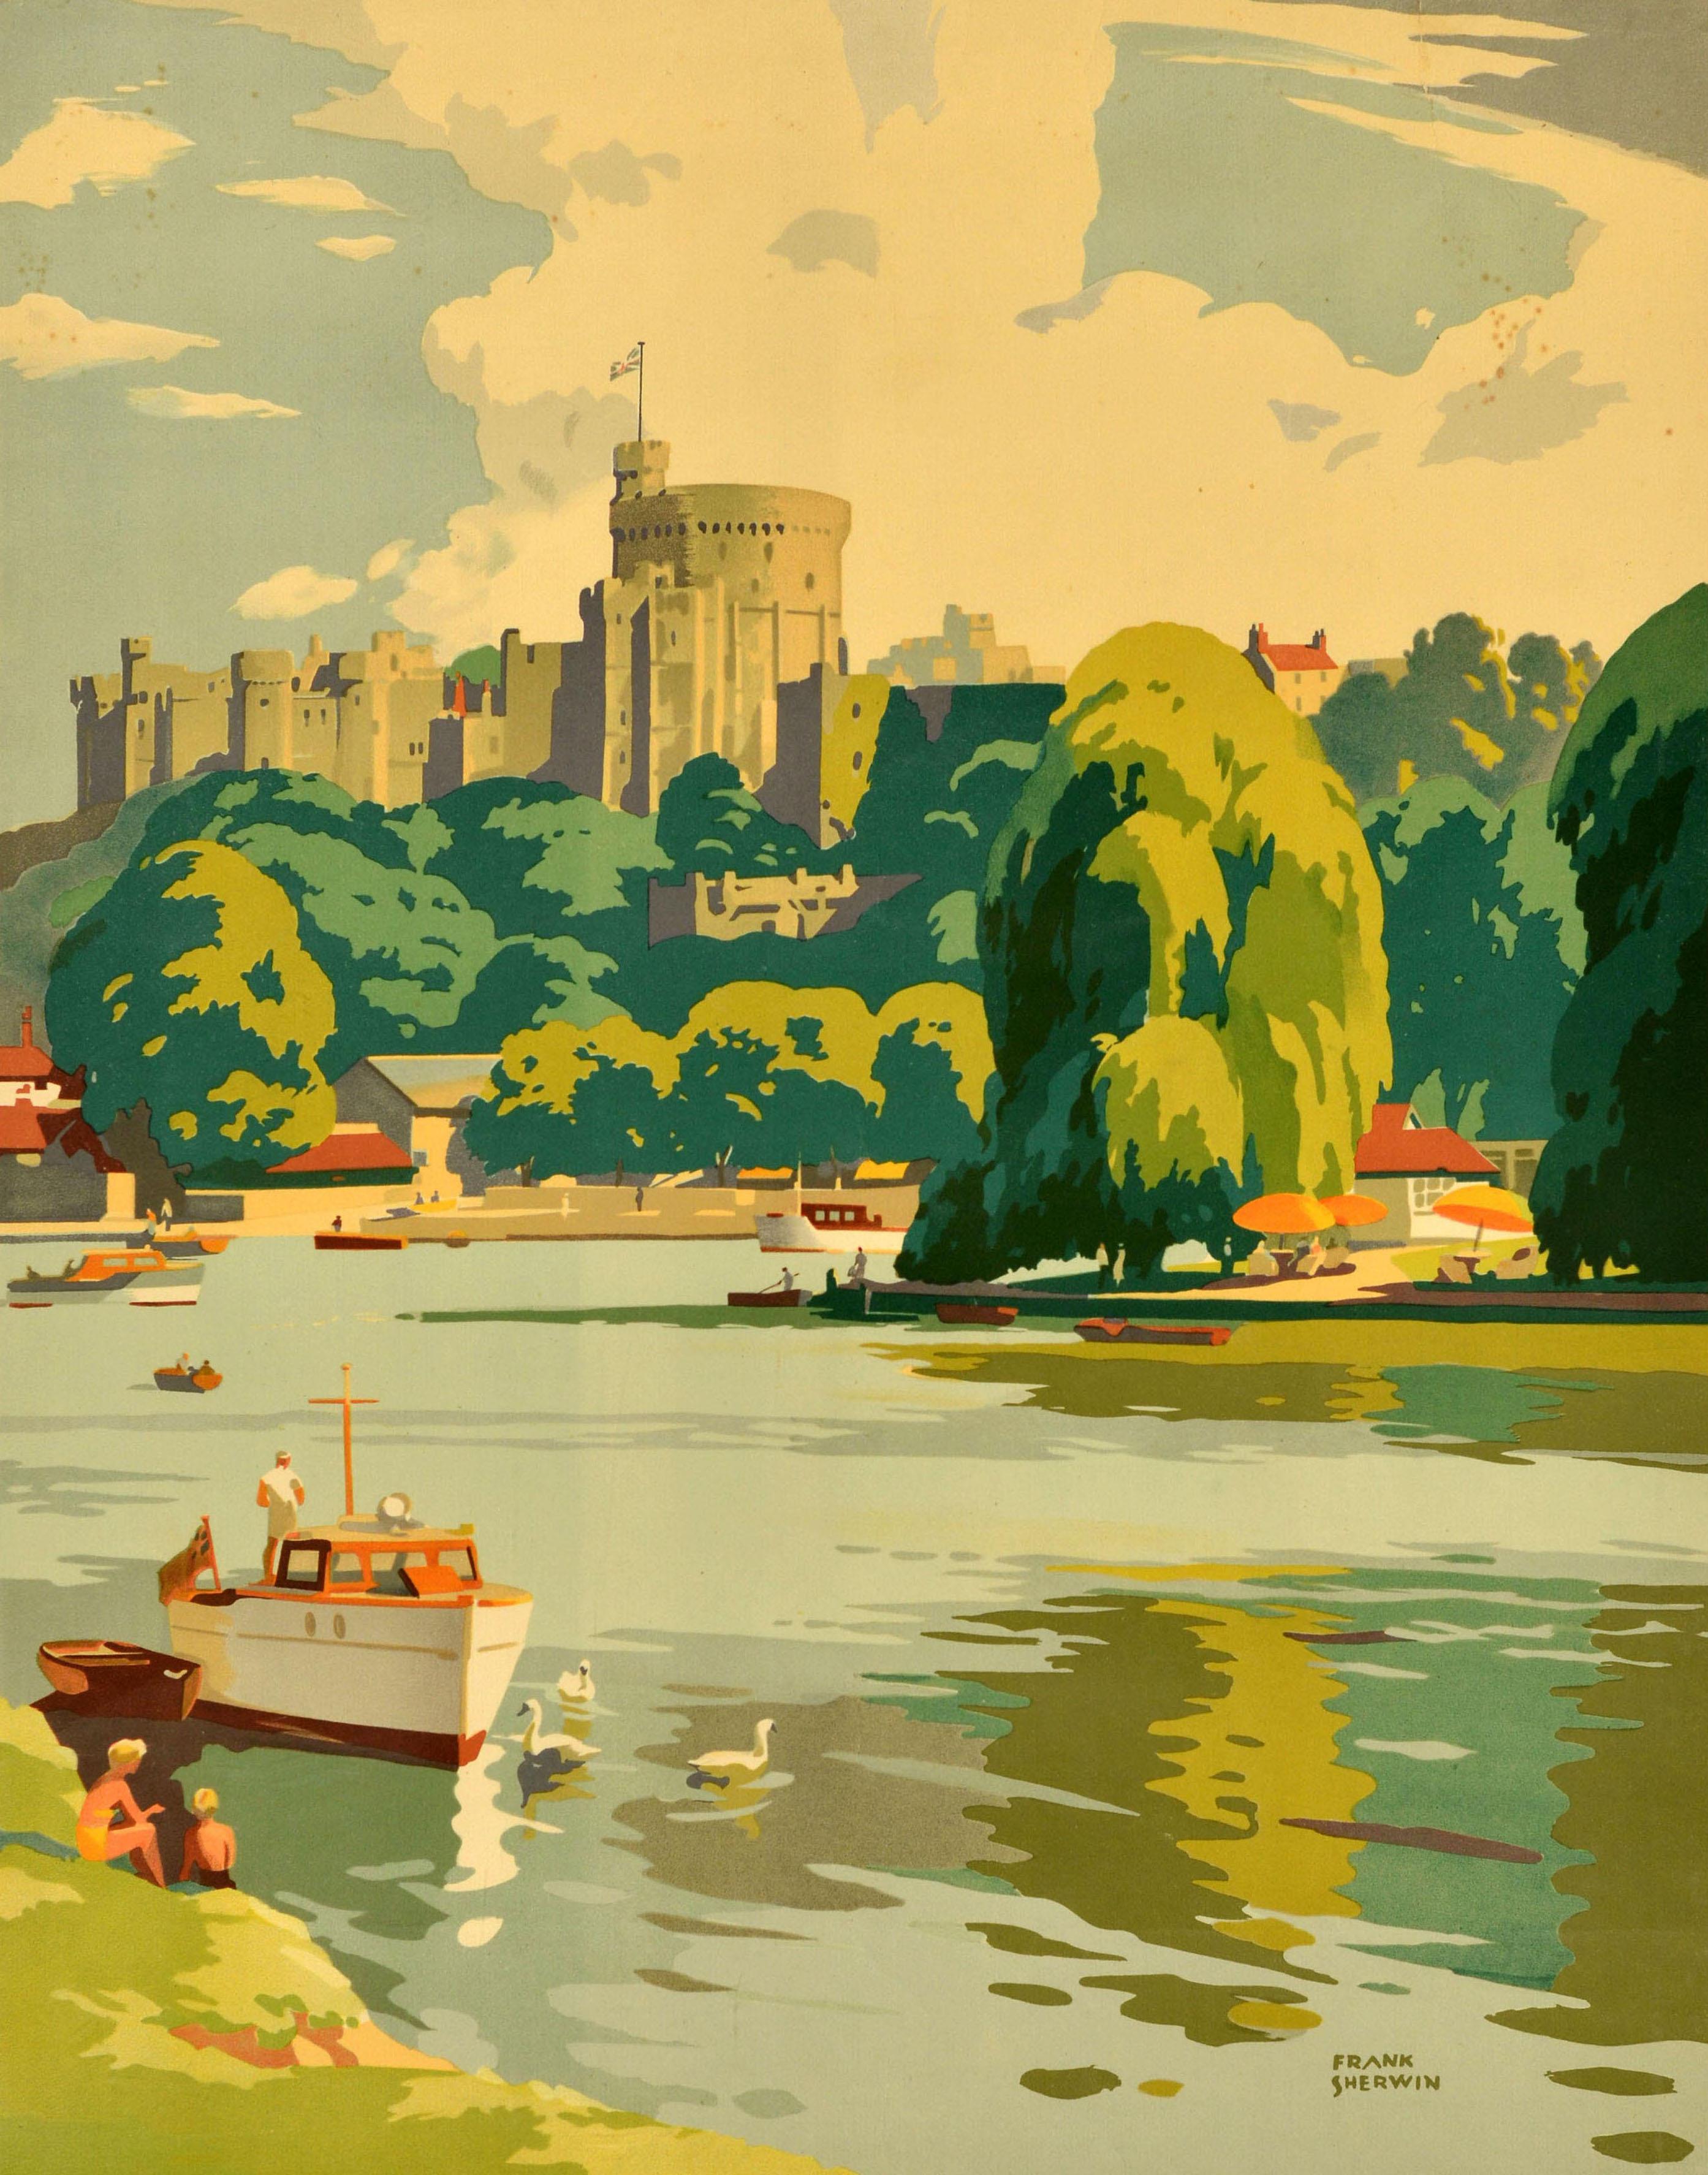 Affiche de voyage vintage originale - Windsor See Britain by Train British Railways - comportant une illustration de Frank Sherwin (1896-1986) représentant une vue du château historique de Windsor avec des personnes sur les rives de la Tamise et des